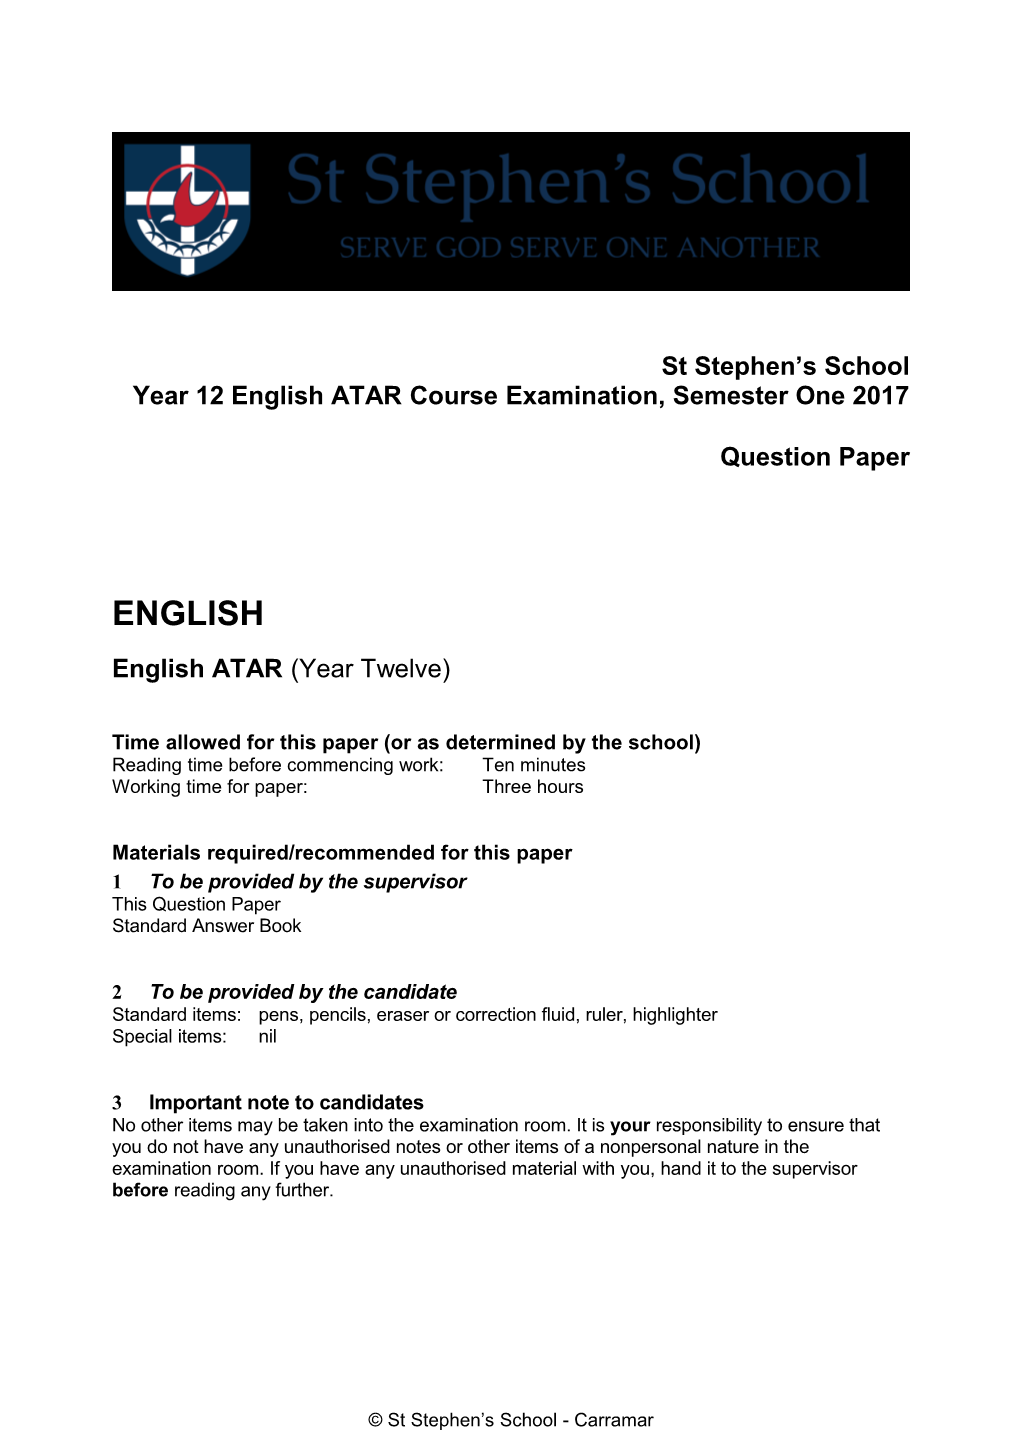 Year 12 English ATAR Course Examination,Semesterone 2017